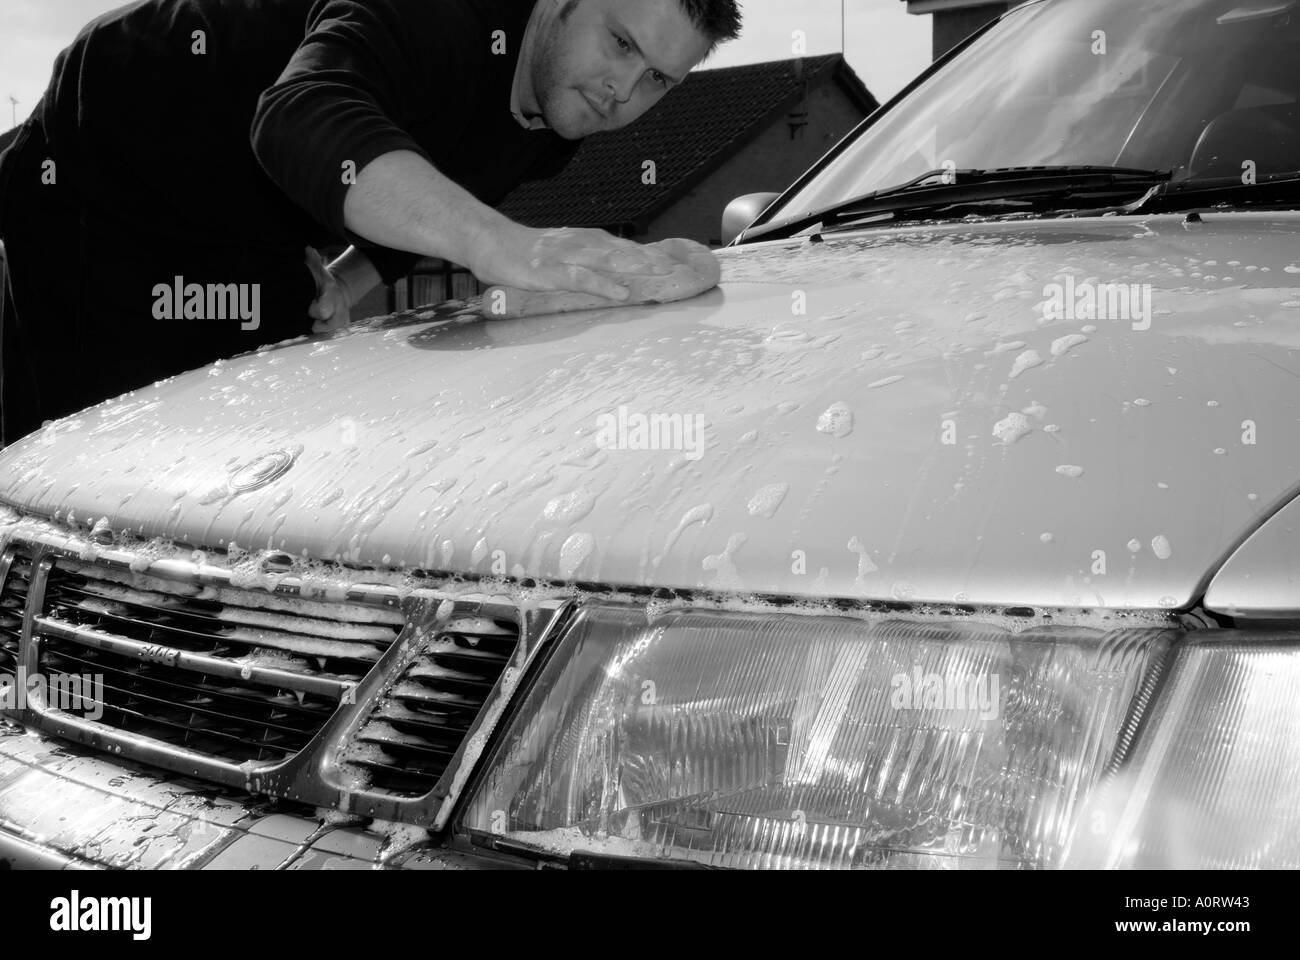 Lavage de voiture propre lavage savonneuse polonais de l'eau savonneuse sale saleté route benne voiture Banque D'Images